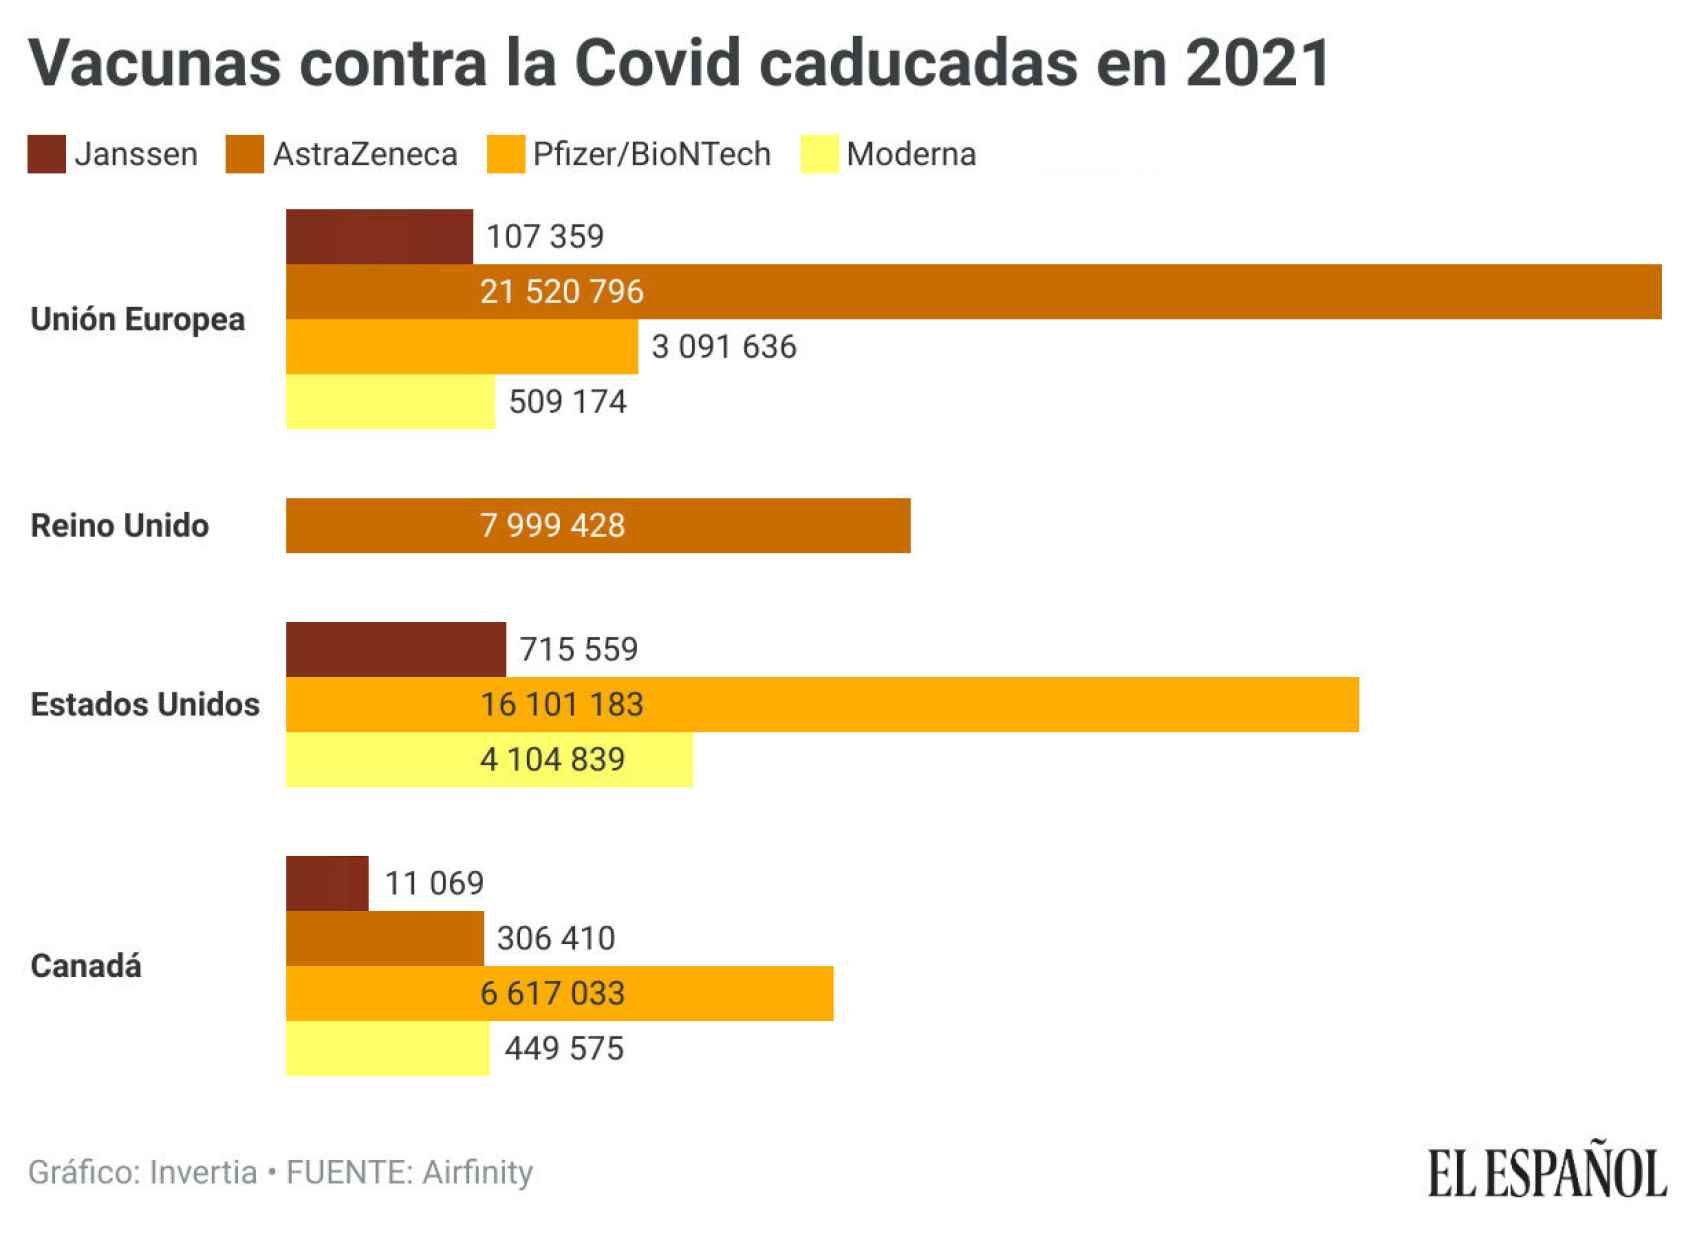 Vacunas contra la Covid caducadas en 2021.